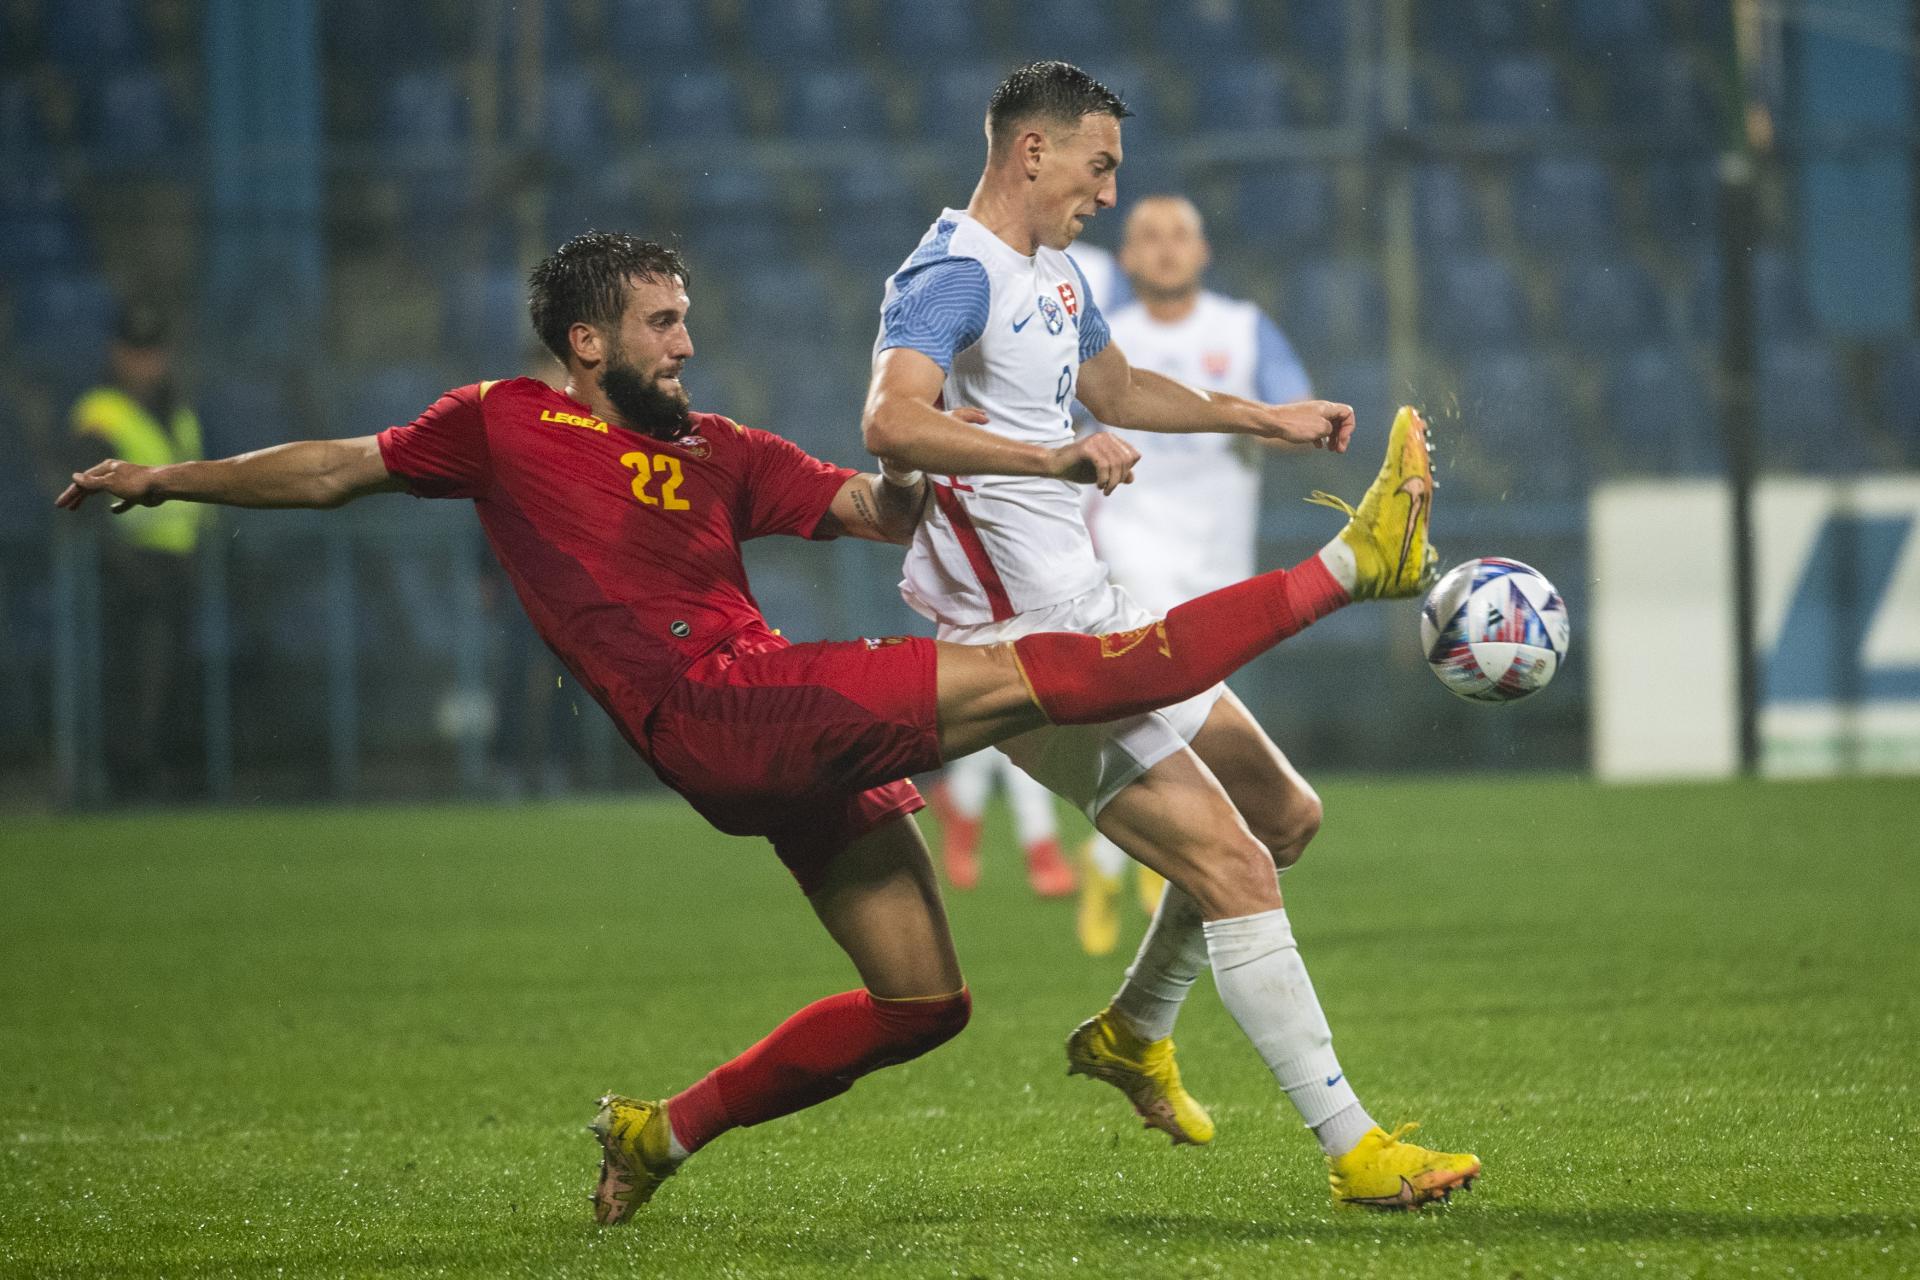 Slováci stratili takmer vyhraný zápas v Čiernej Hore, po pokazenom závere len remizovali